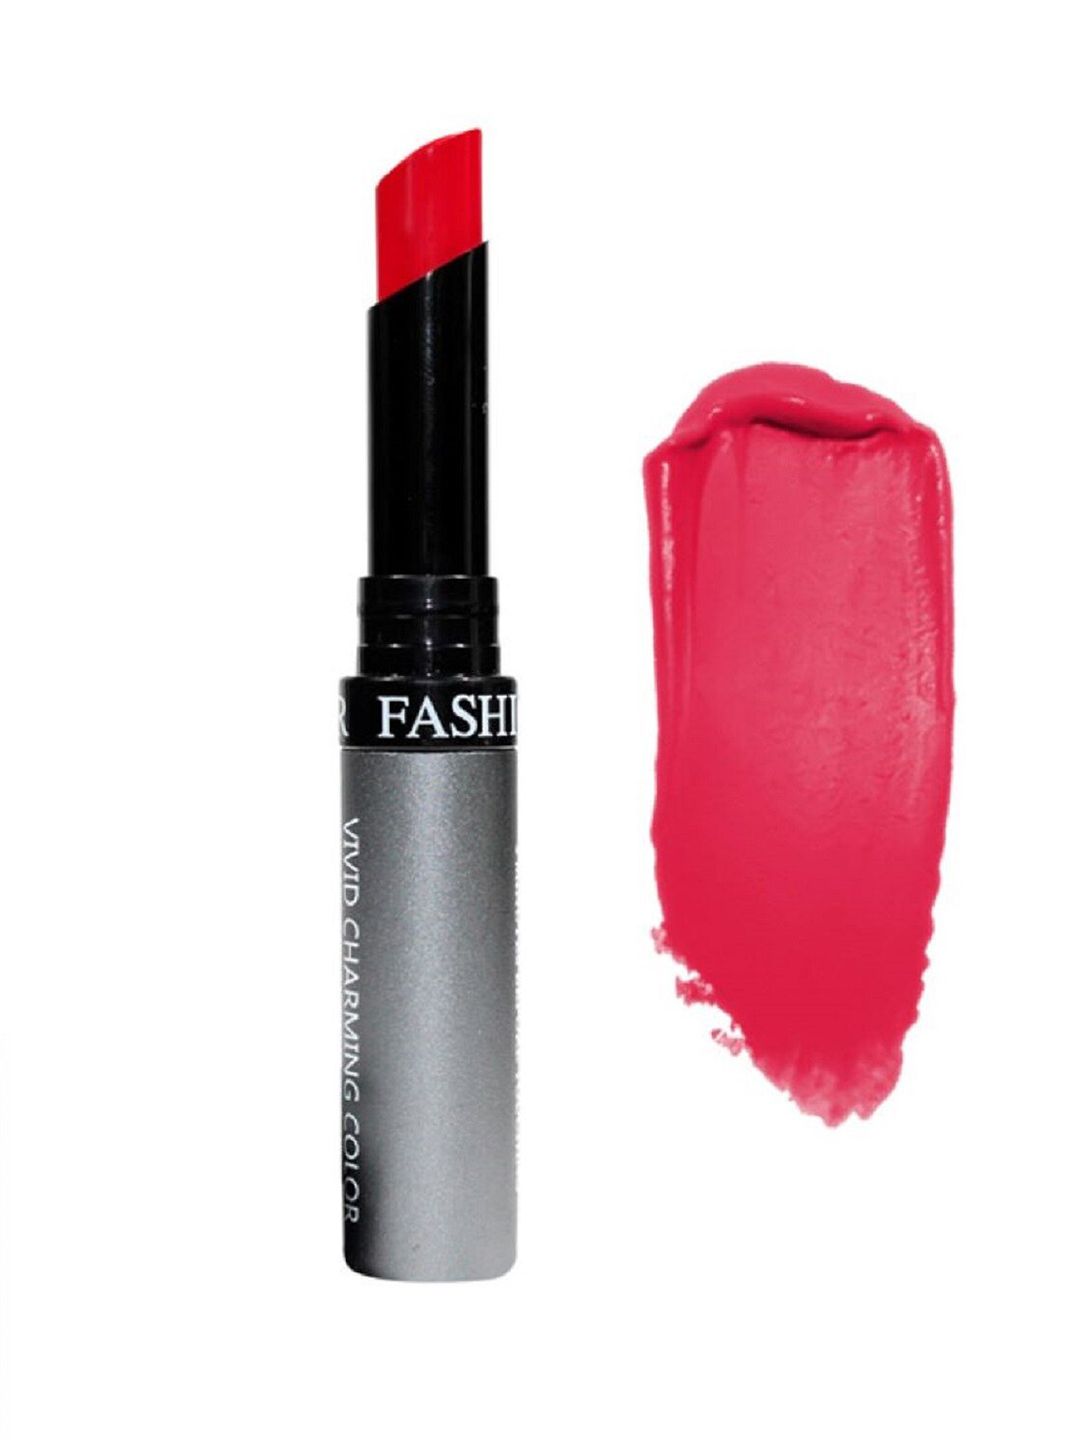 Fashion Colour Kiss Lip No Transfer Lipstick - Scarlet 56 Price in India